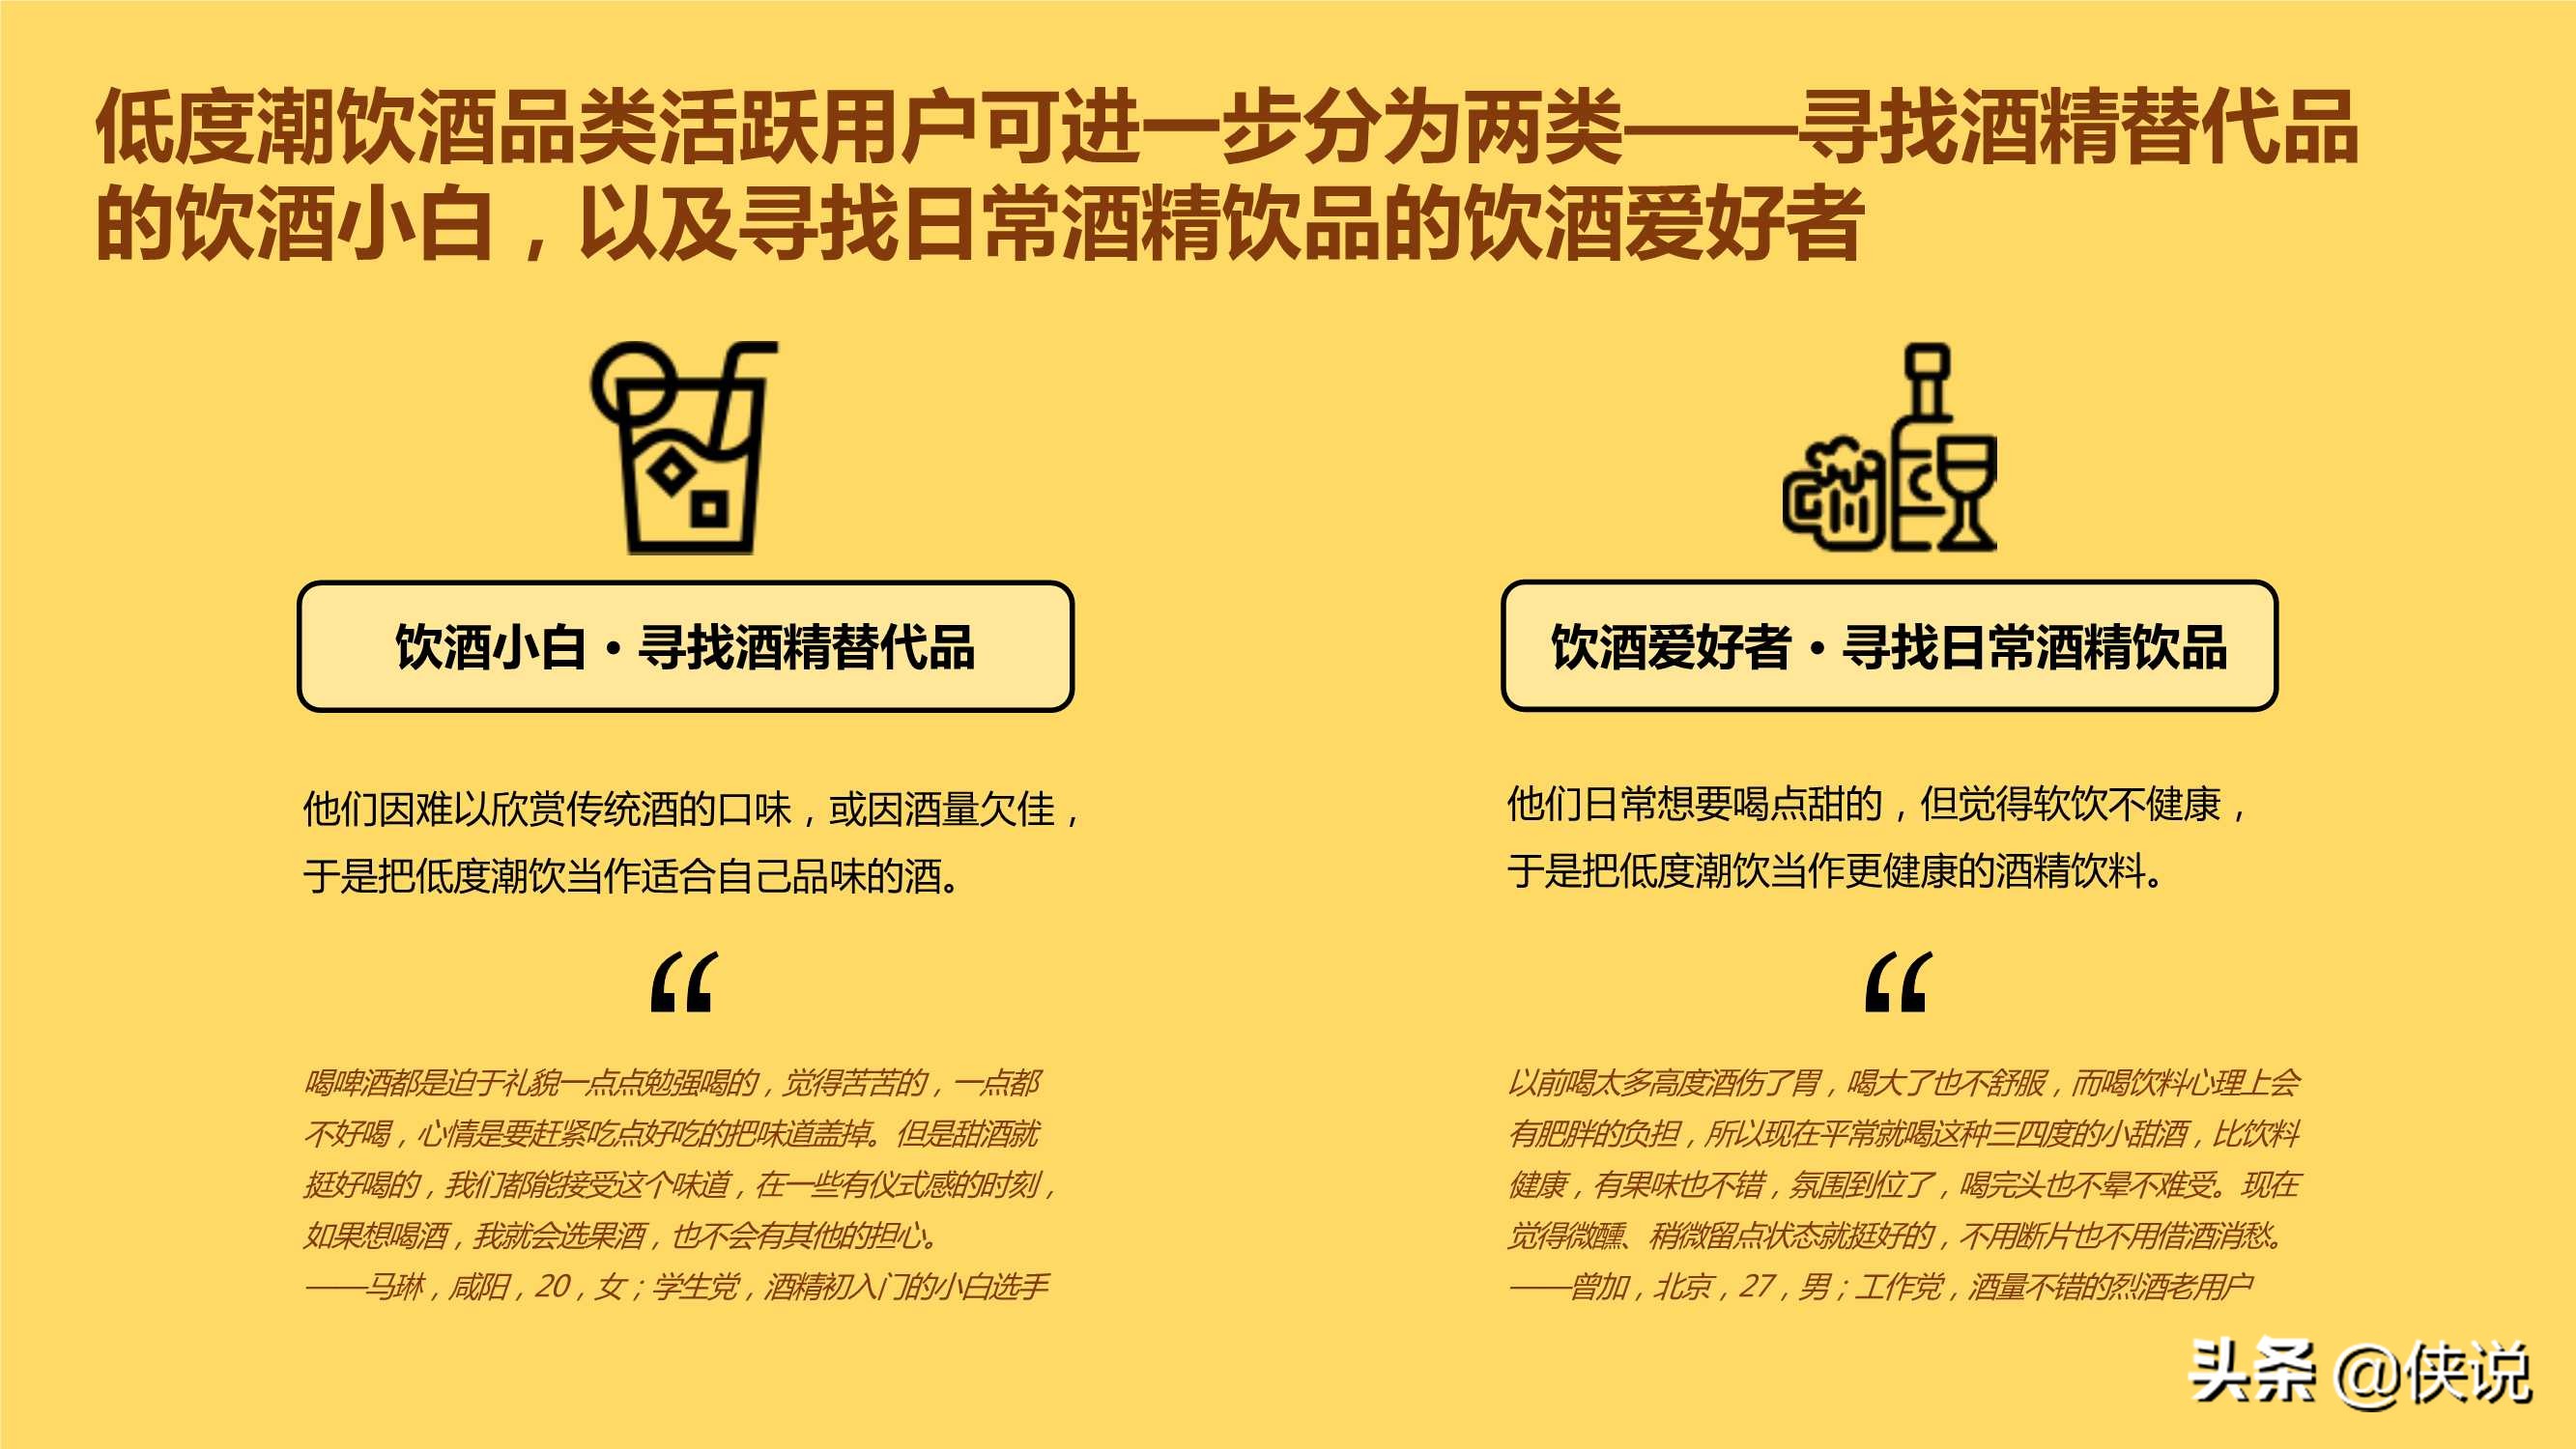 中国年轻人低度潮饮酒Alco-pop品类文化白皮书